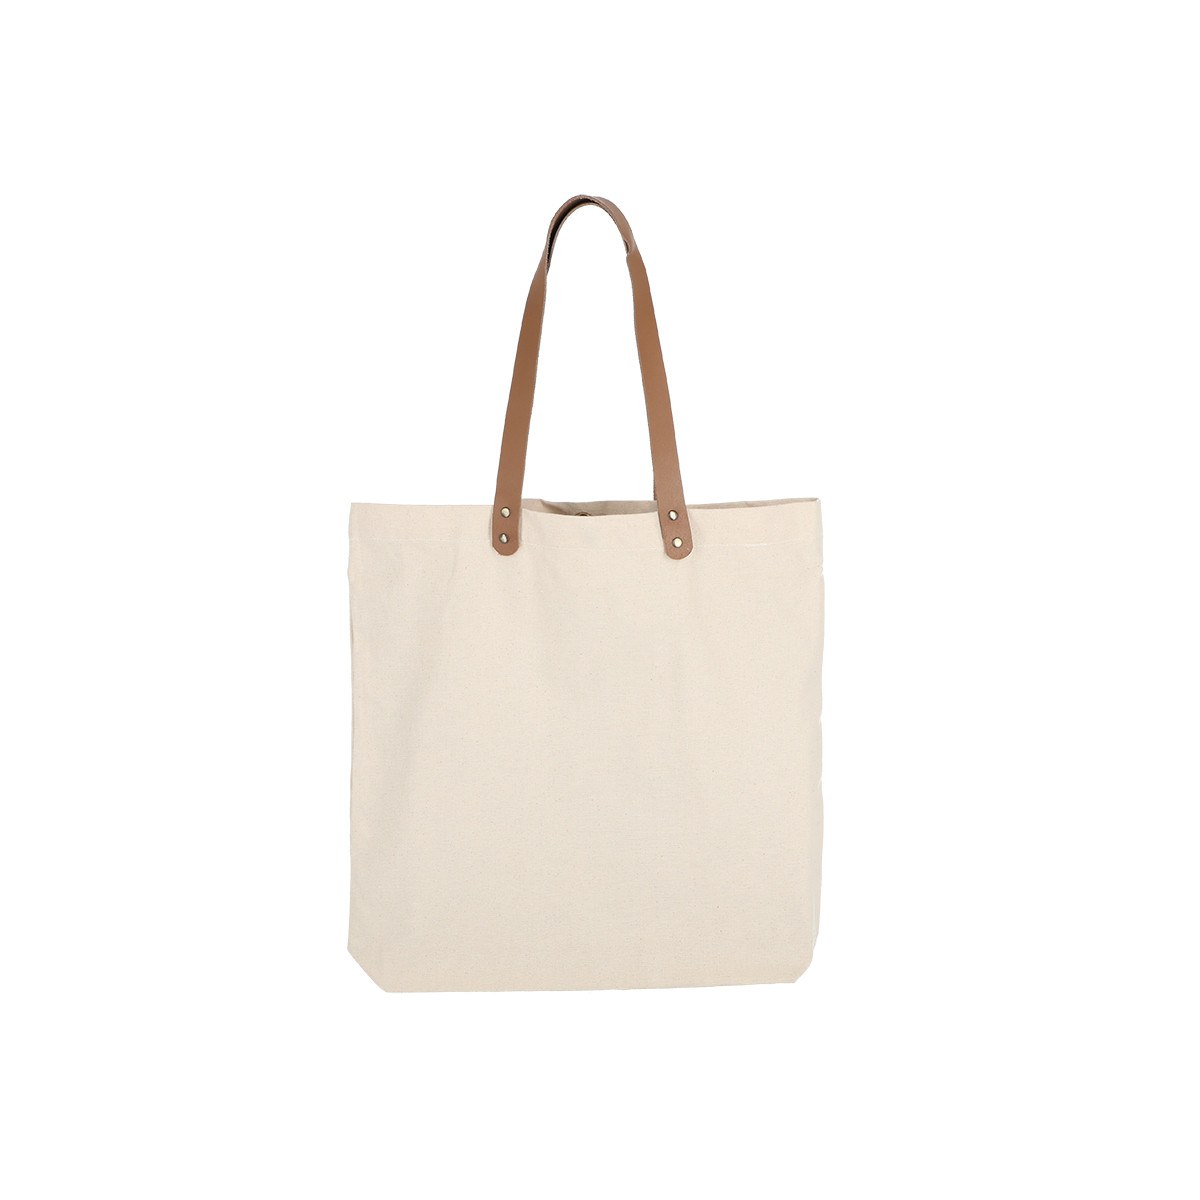 Bolsa de Uso Personal color natural con manillas de cuero 45x45x8 (cm)